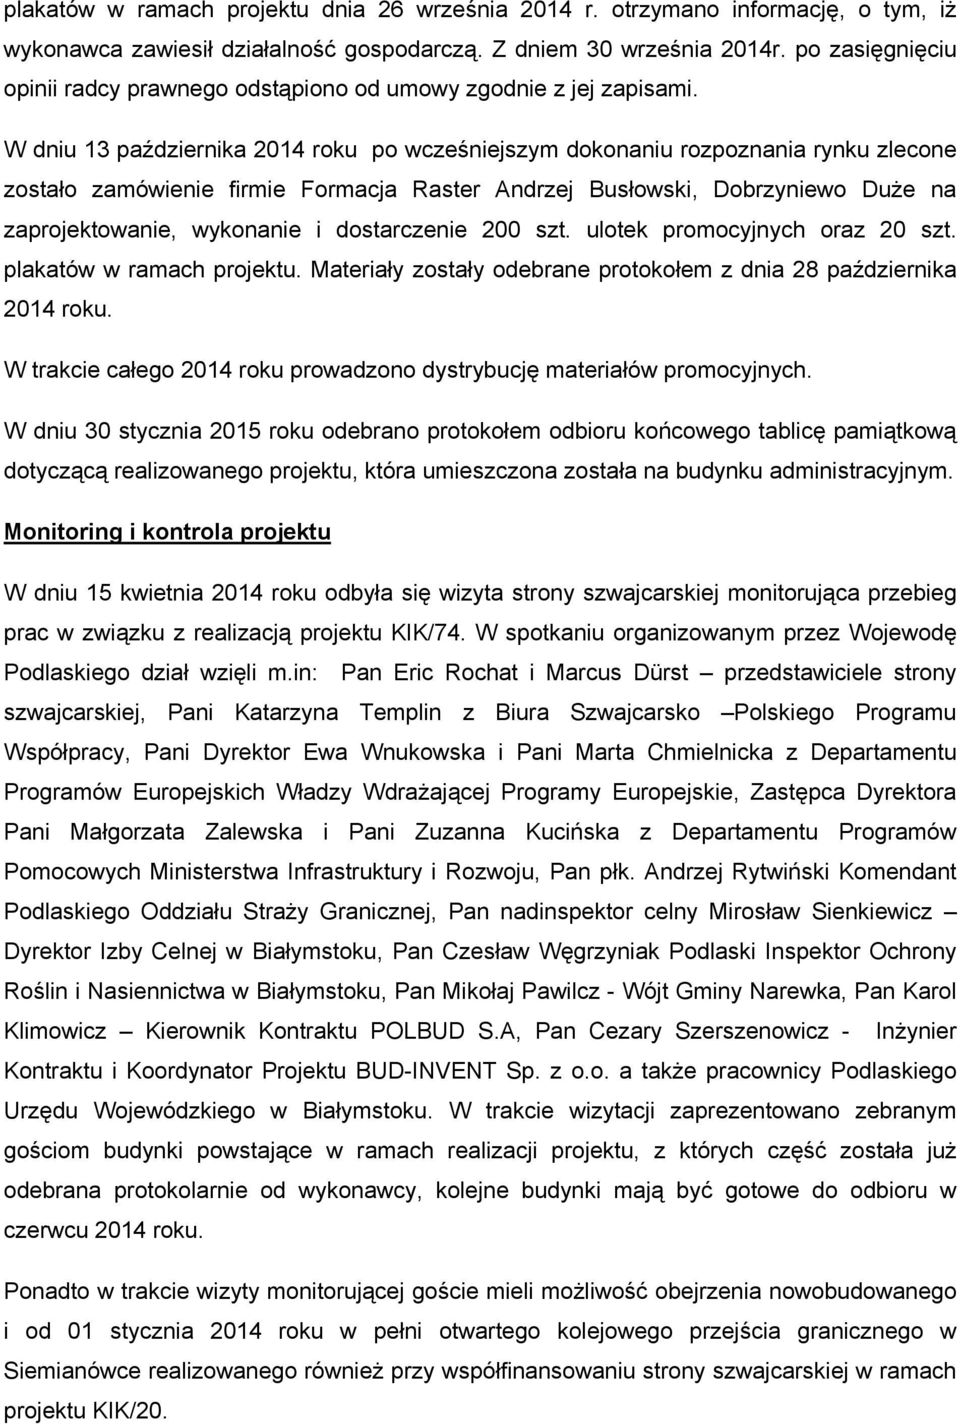 W dniu 13 października 2014 roku po wcześniejszym dokonaniu rozpoznania rynku zlecone zostało zamówienie firmie Formacja Raster Andrzej Busłowski, Dobrzyniewo DuŜe na zaprojektowanie, wykonanie i